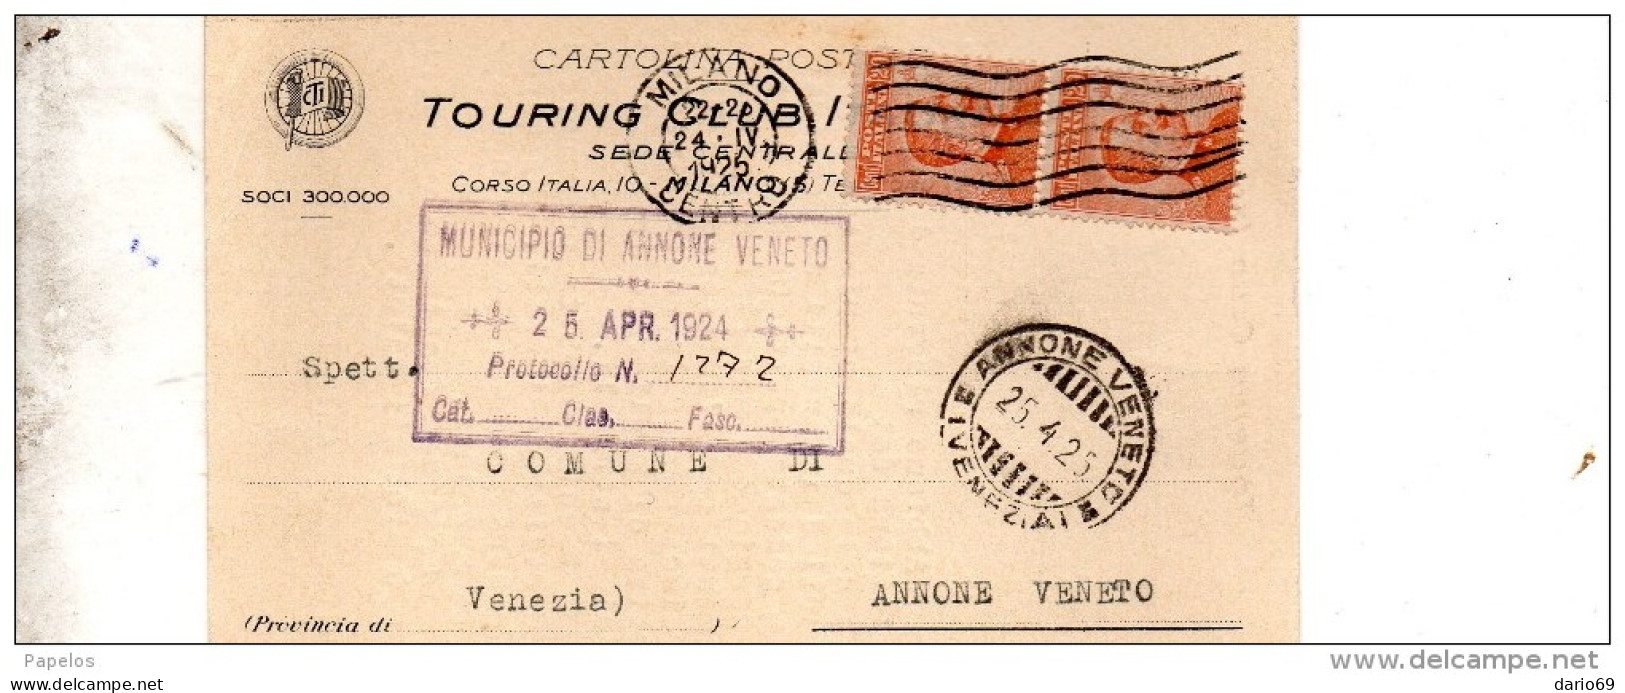 1925 CARTOLINA INTESTATA TOURING CLUB CON ANNULLO MILANO + ANNONE VENETO VENEZIA - Poststempel